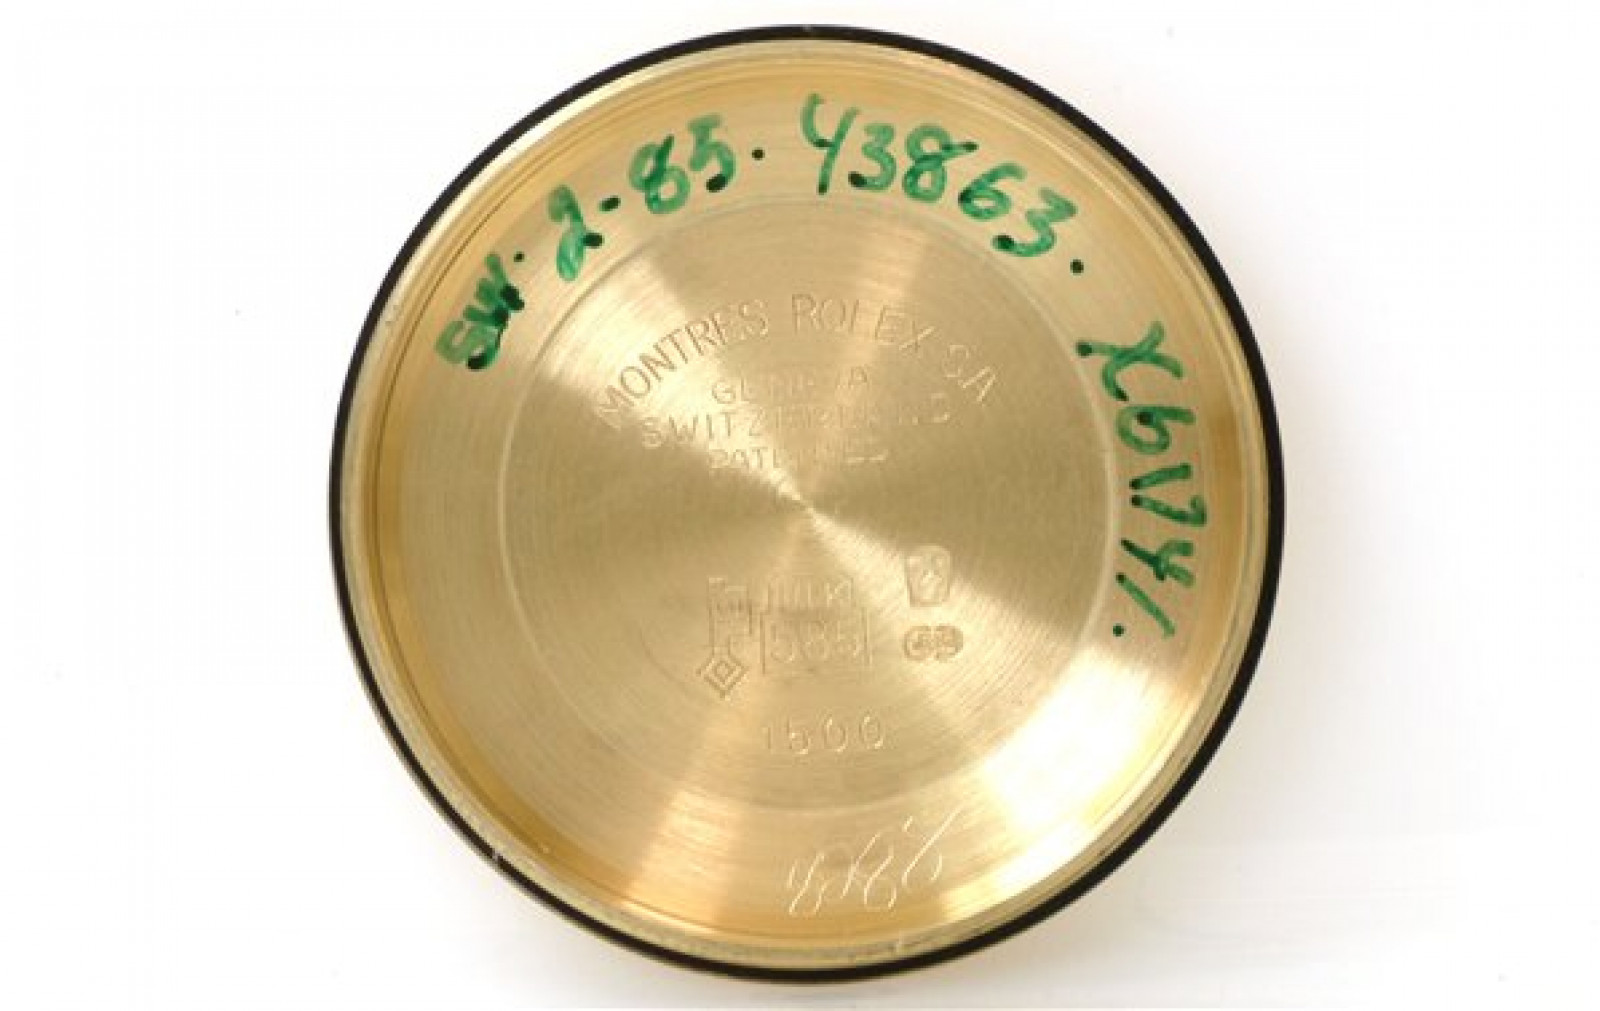 Vintage Rolex Date 1503 Year 1979 Gold Case